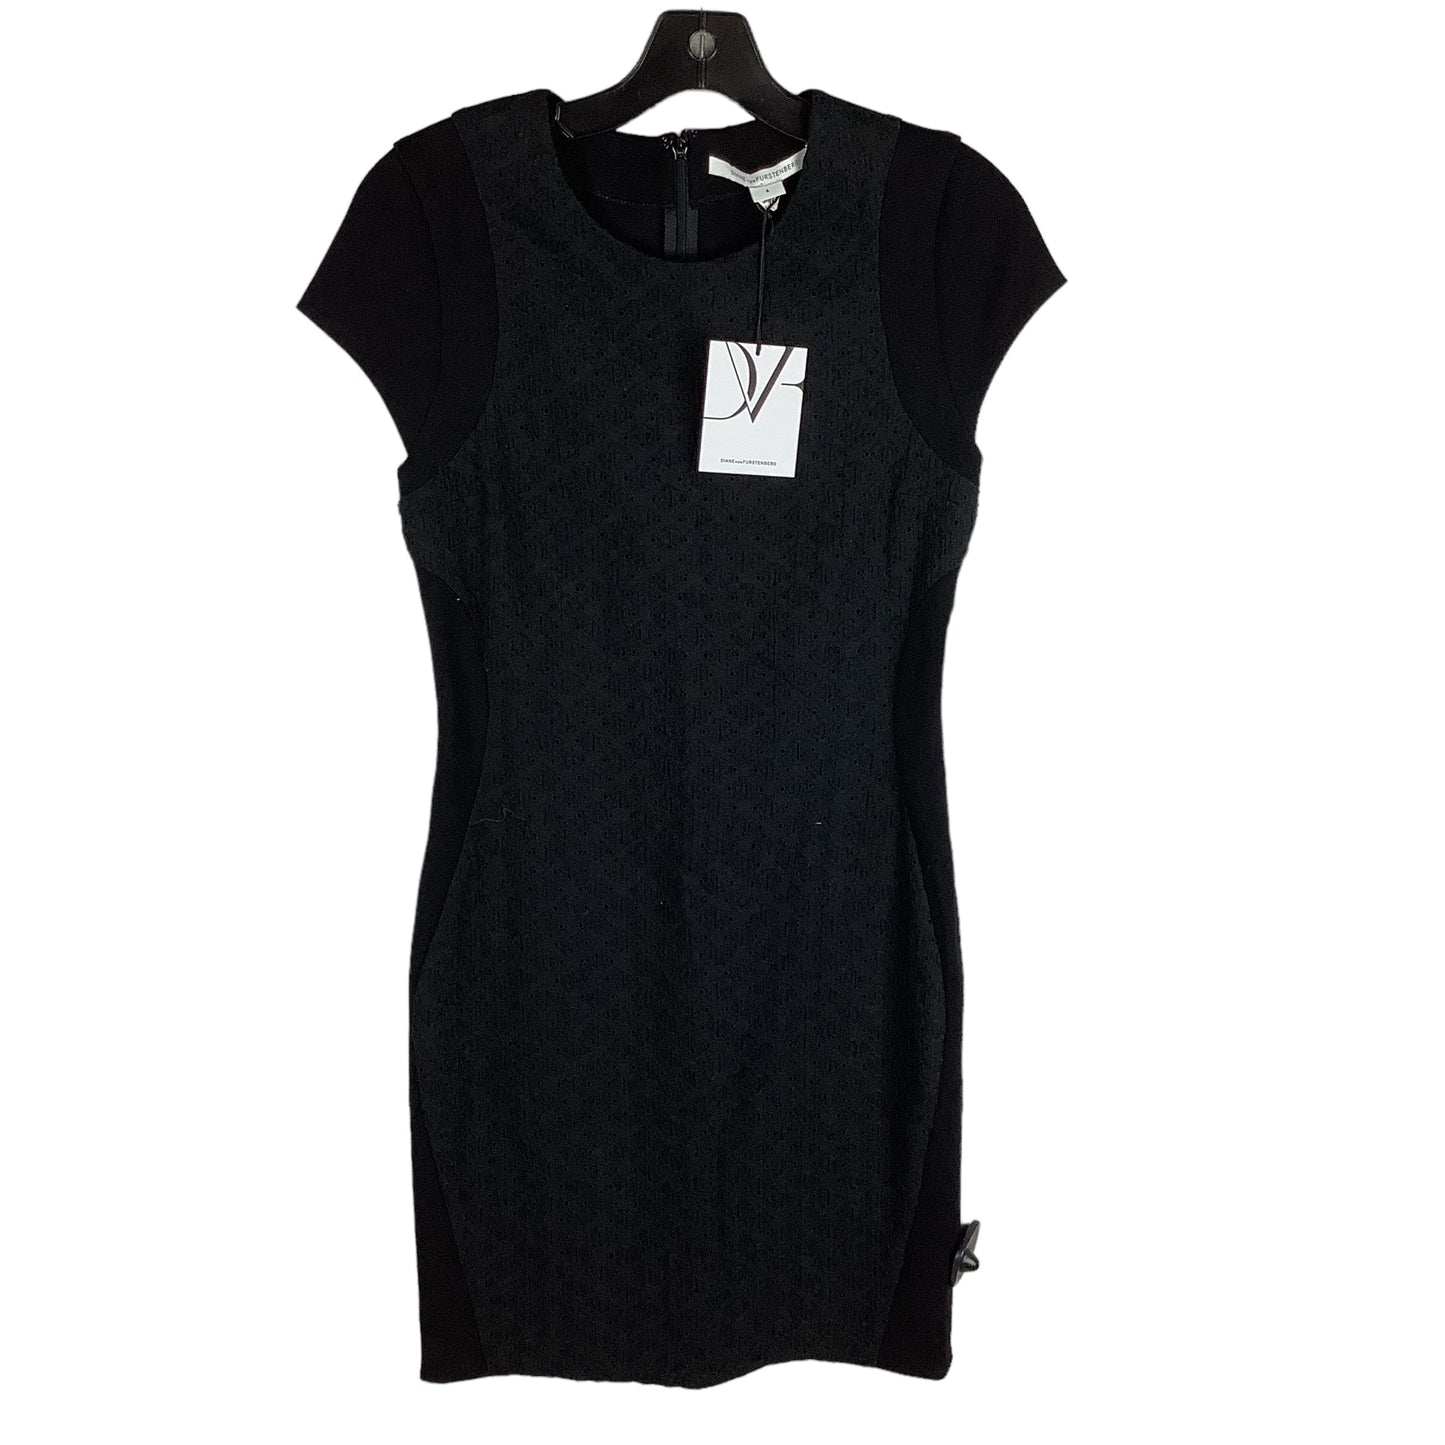 Black Dress Designer Diane Von Furstenberg, Size 4